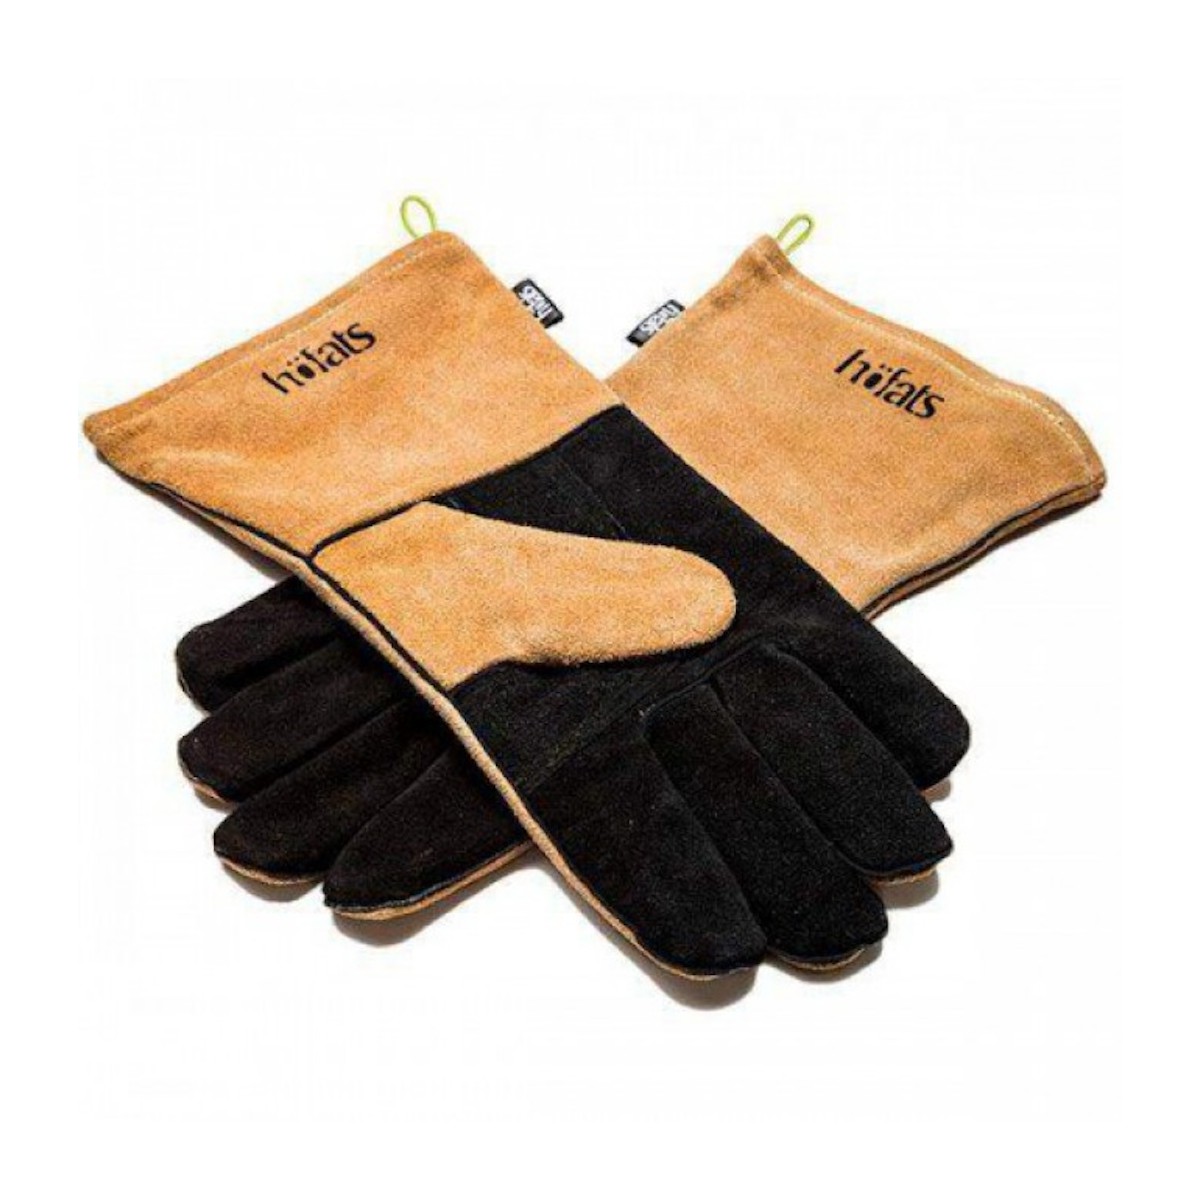 HOFATS fire gloves leather